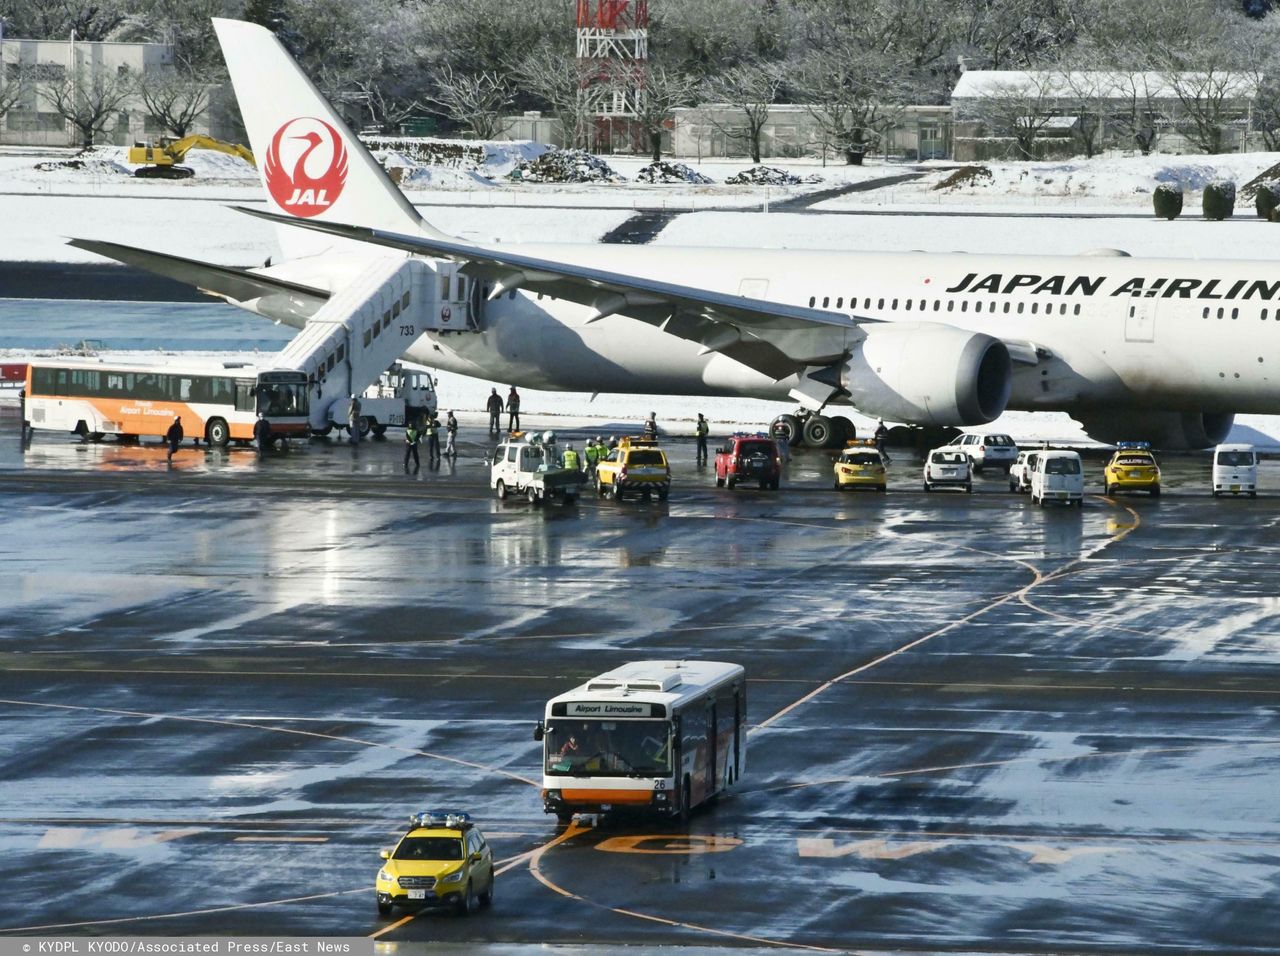 50 tys. darmowych biletów lotniczych. Japan Airlines przygotowało niespodziankę dla turystów